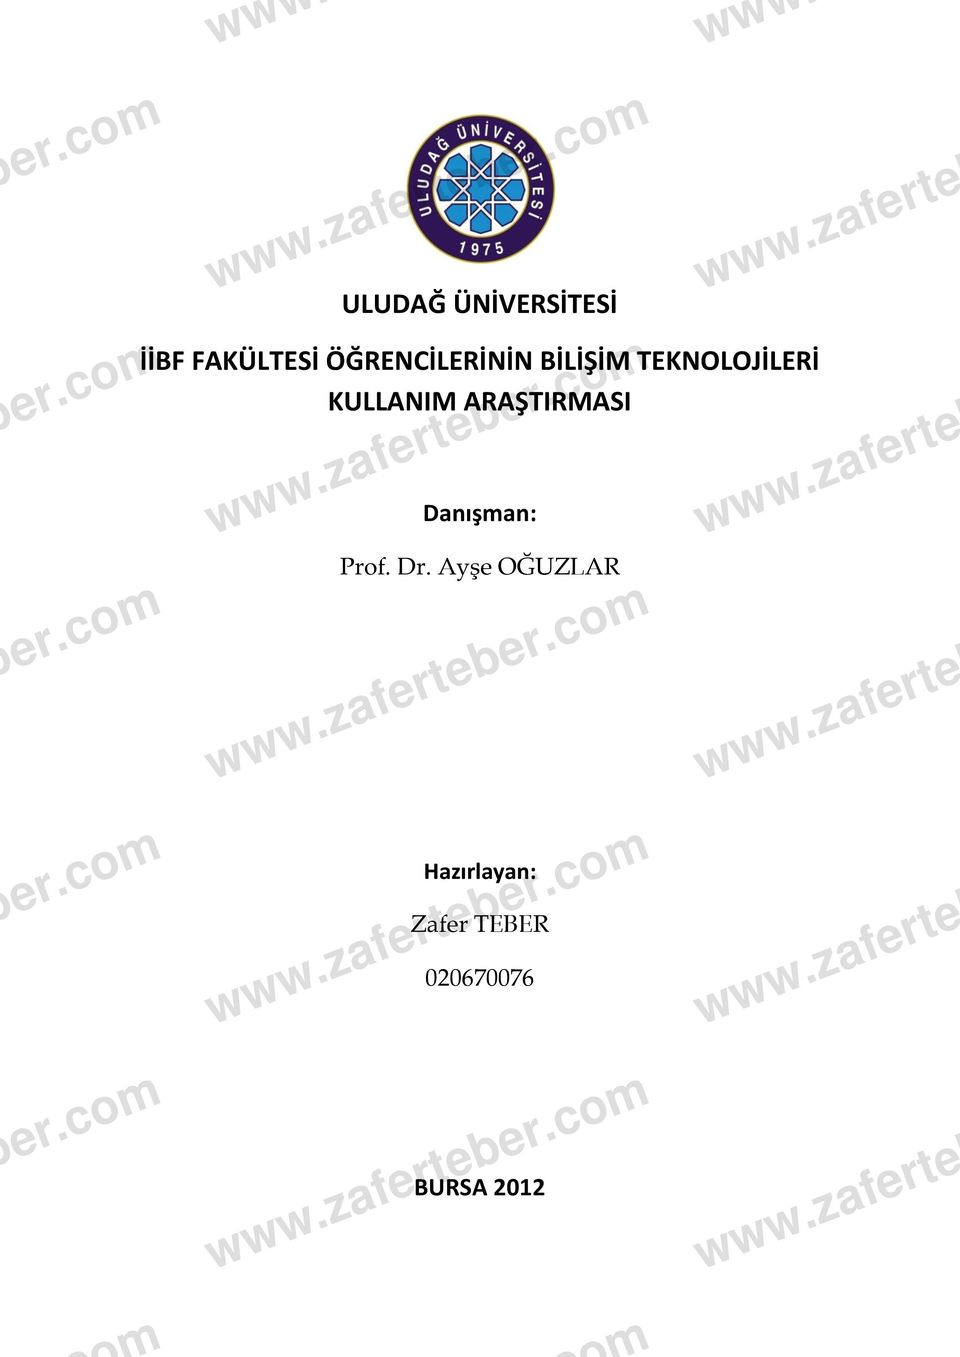 ARAŞTIRMASI www.zaferteber.com Danışman: Prof. Dr. Ayşe OĞUZLAR www.zaferteber.com www.